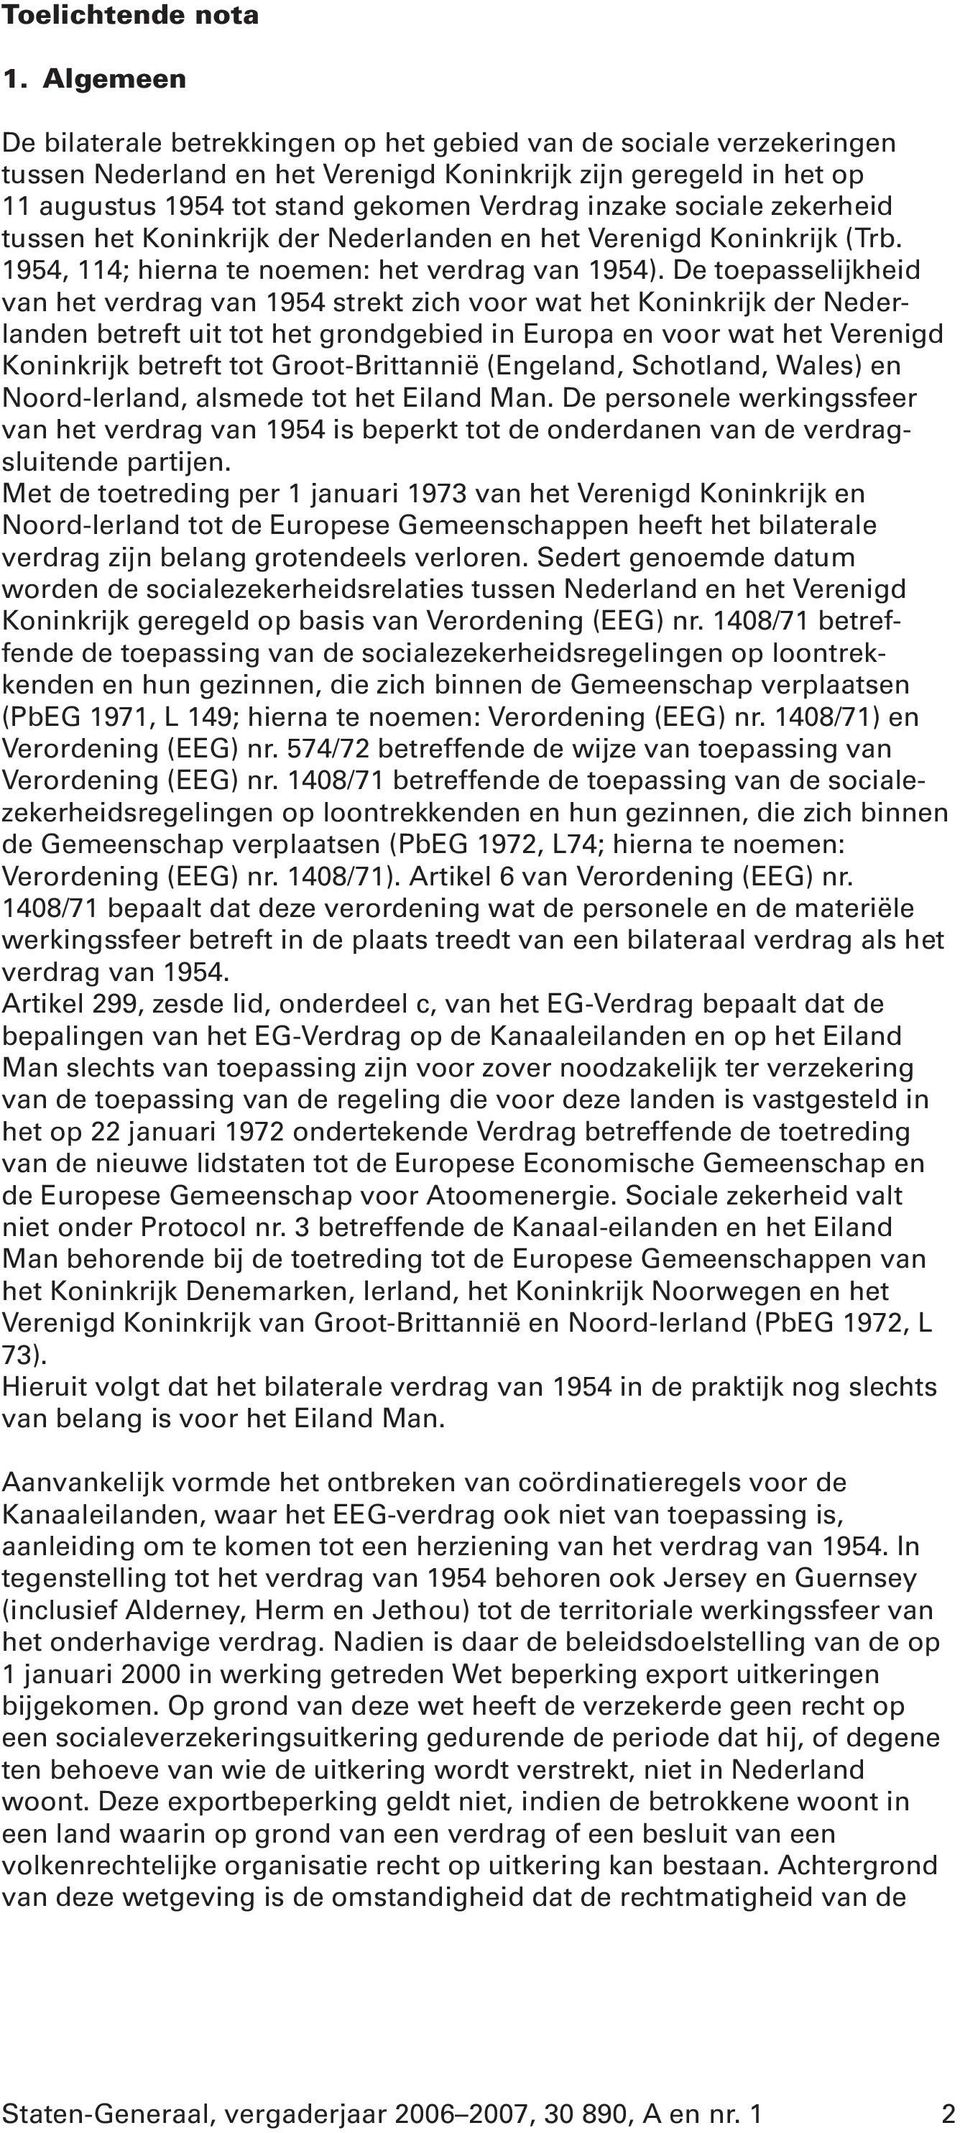 sociale zekerheid tussen het Koninkrijk der Nederlanden en het Verenigd Koninkrijk (Trb. 1954, 114; hierna te noemen: het verdrag van 1954).